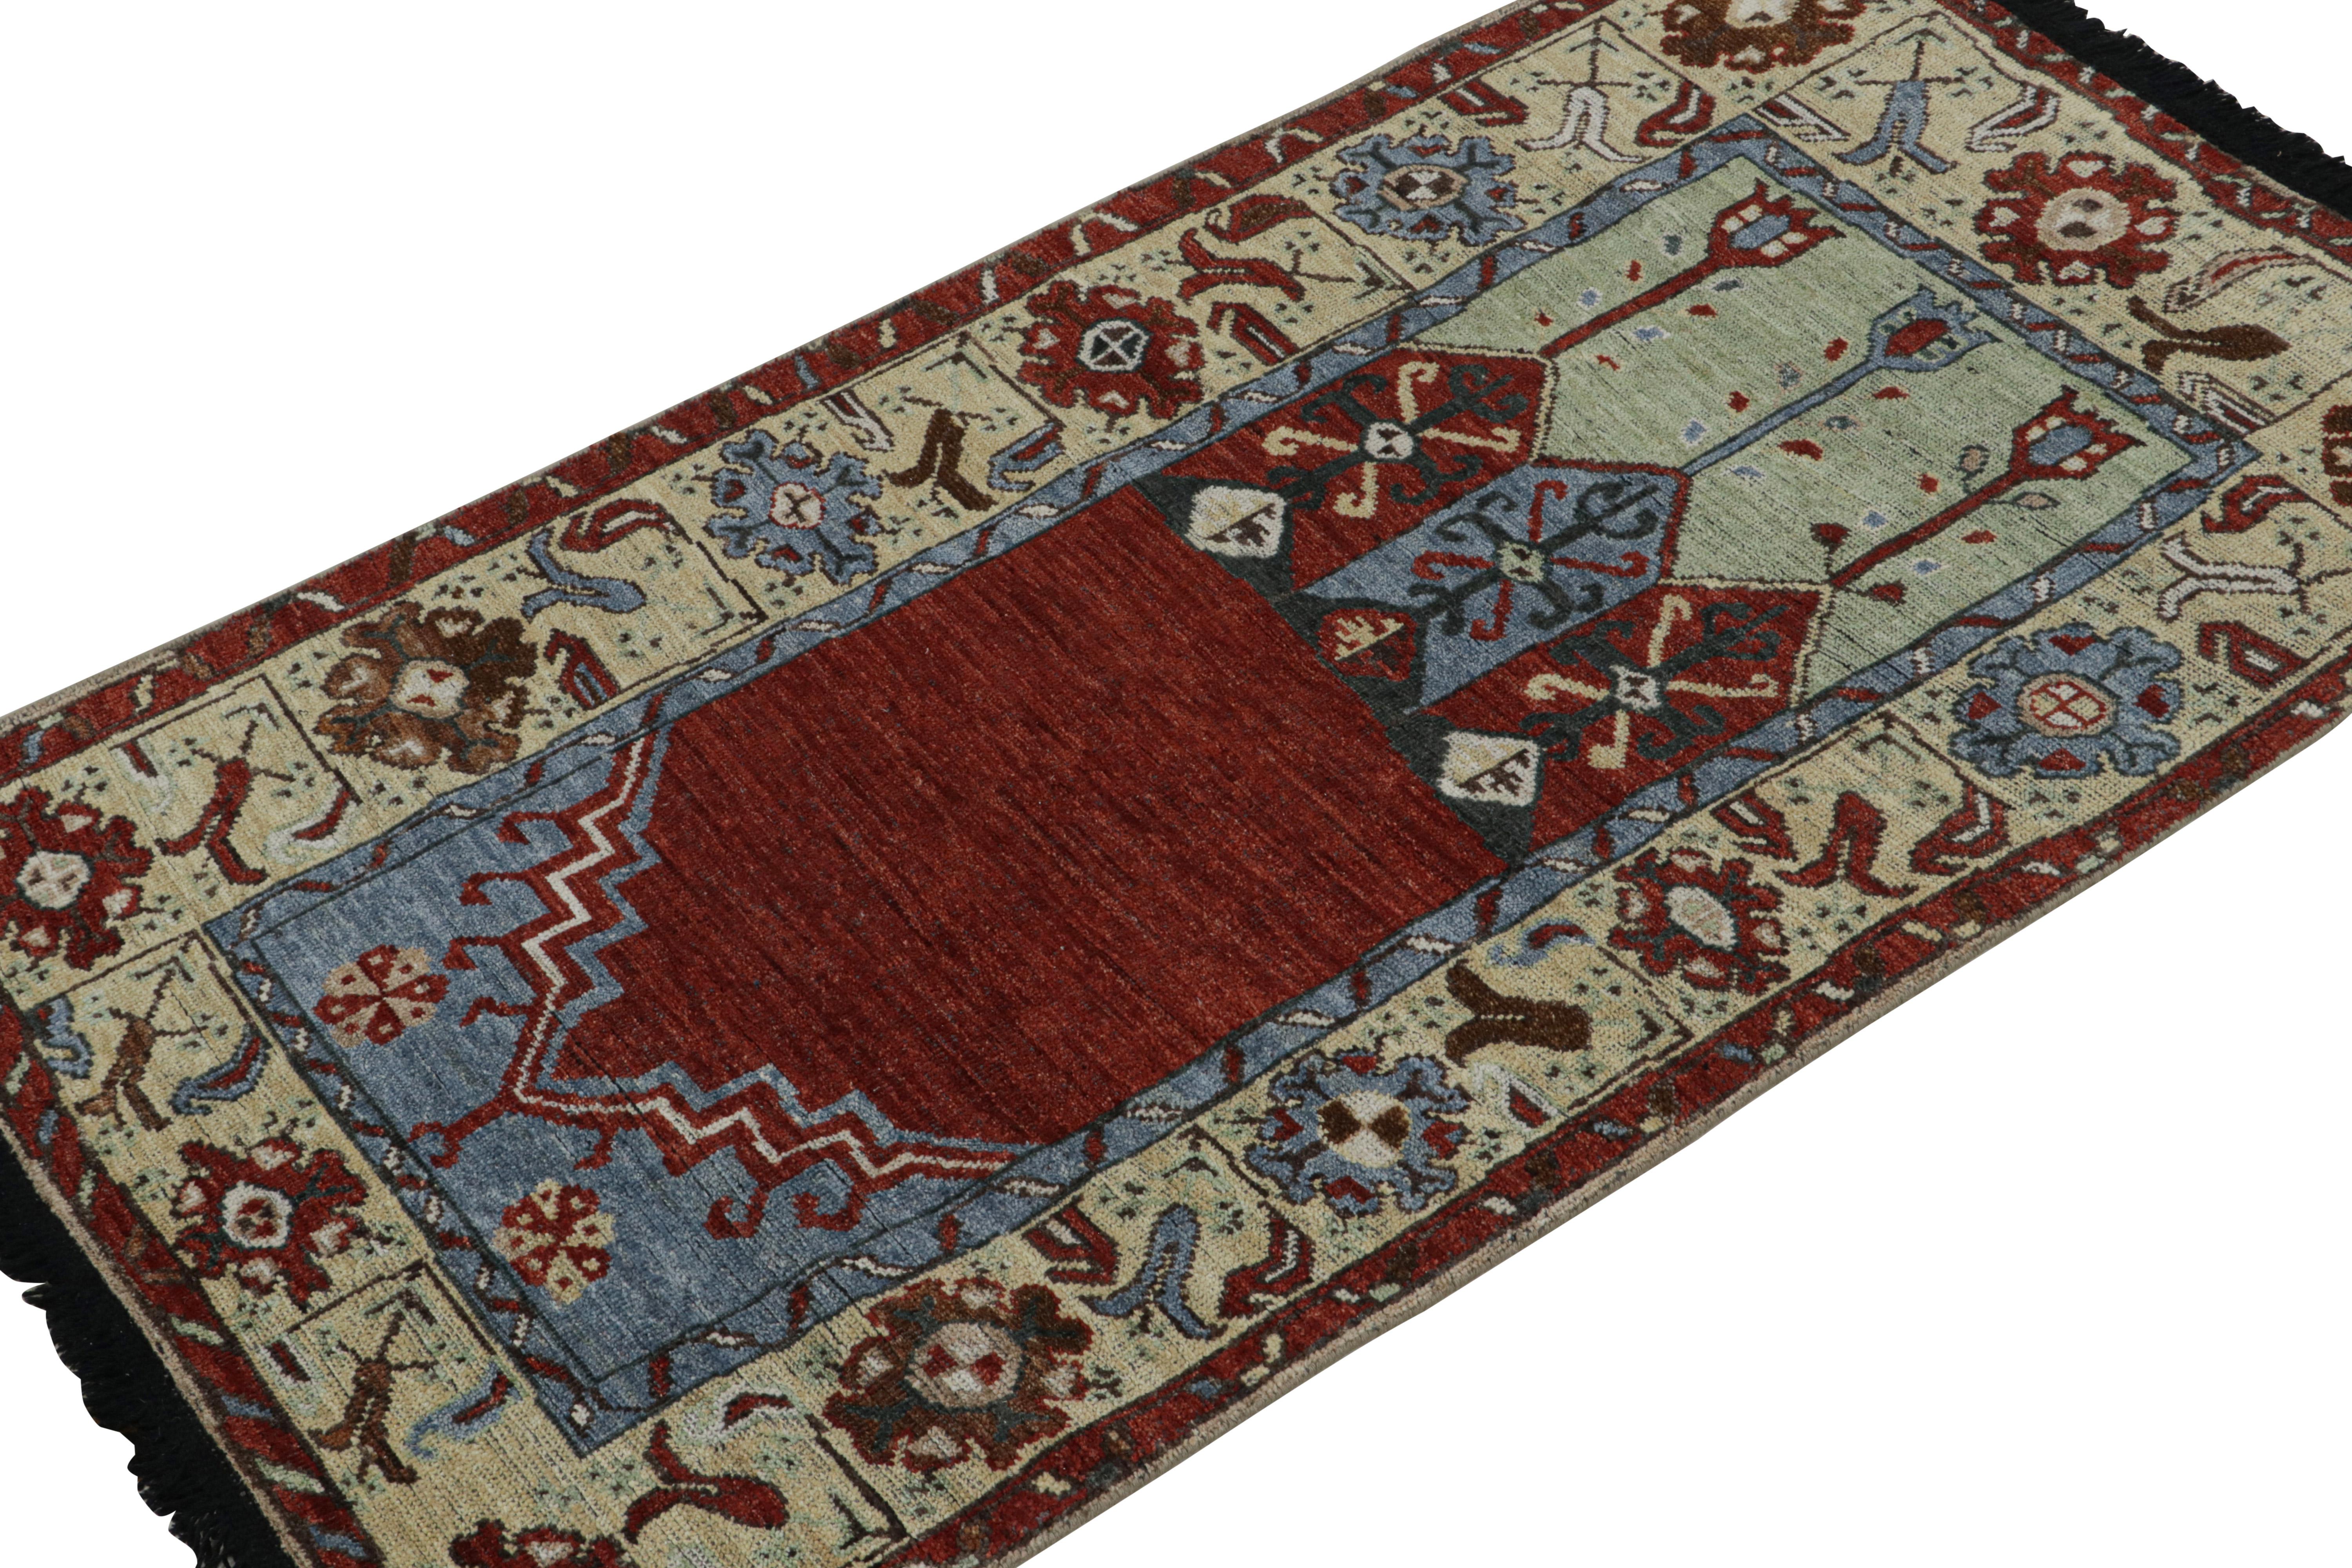 Ce chemin de table 3x6 est une nouvelle entrée grandiose dans la collection Burano de Rug & Kilim. Noué à la main en laine.

Plus loin dans le Design : 

Inspiré par d'anciens tapis de course tribaux, ce tapis se délecte de rouge, de bleu et de